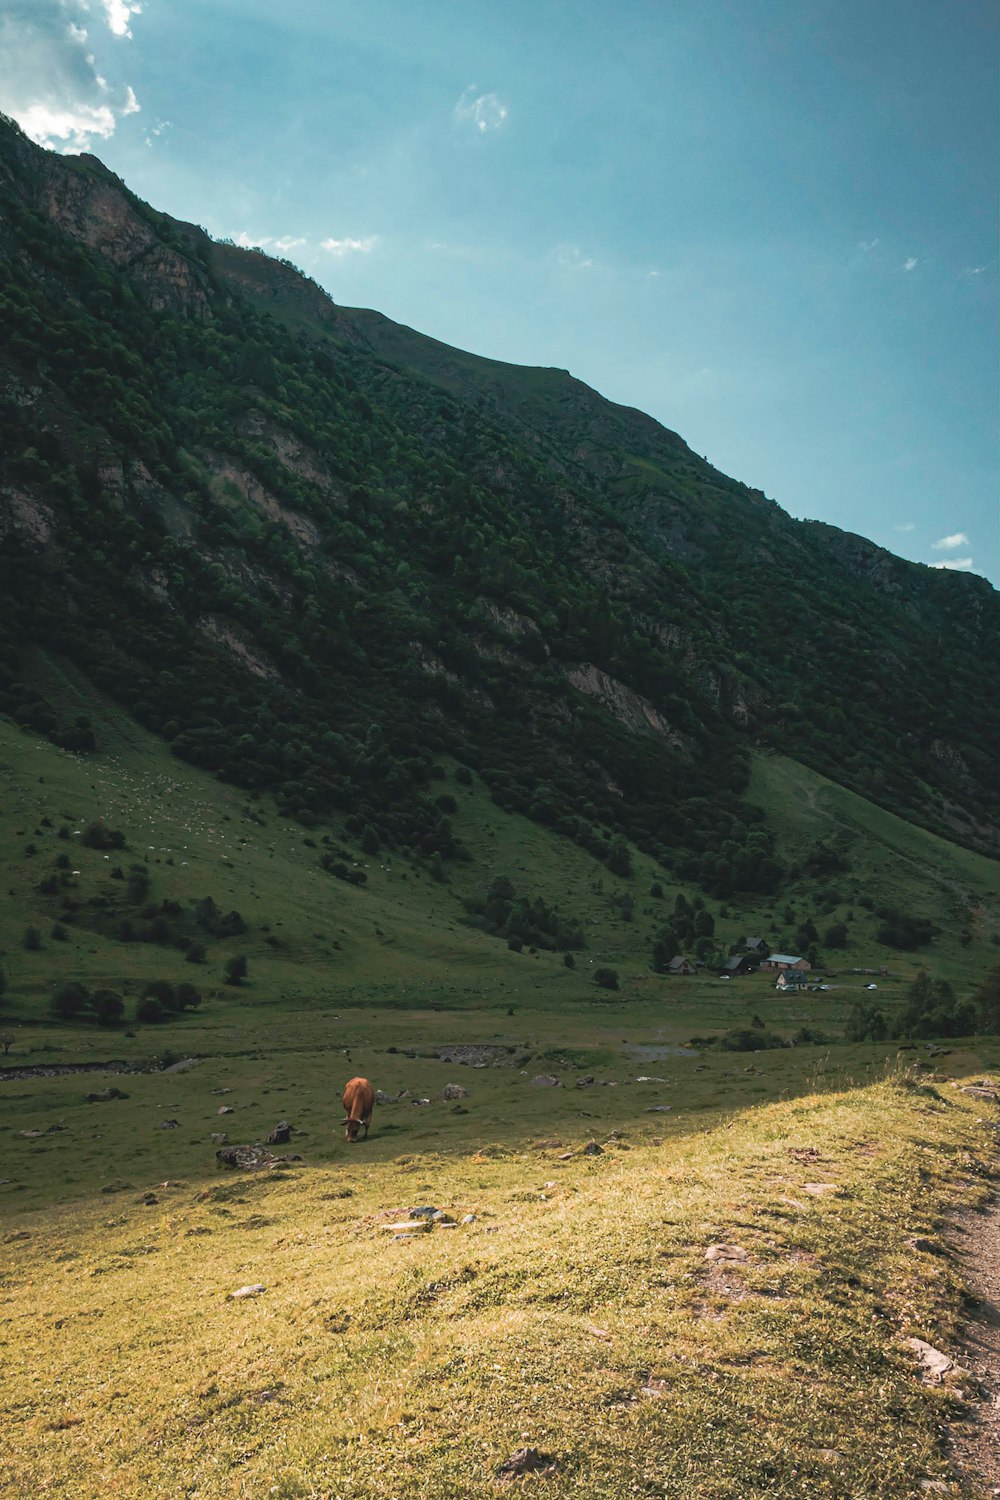 무성한 녹색 언덕 위에 서있는 갈색 소